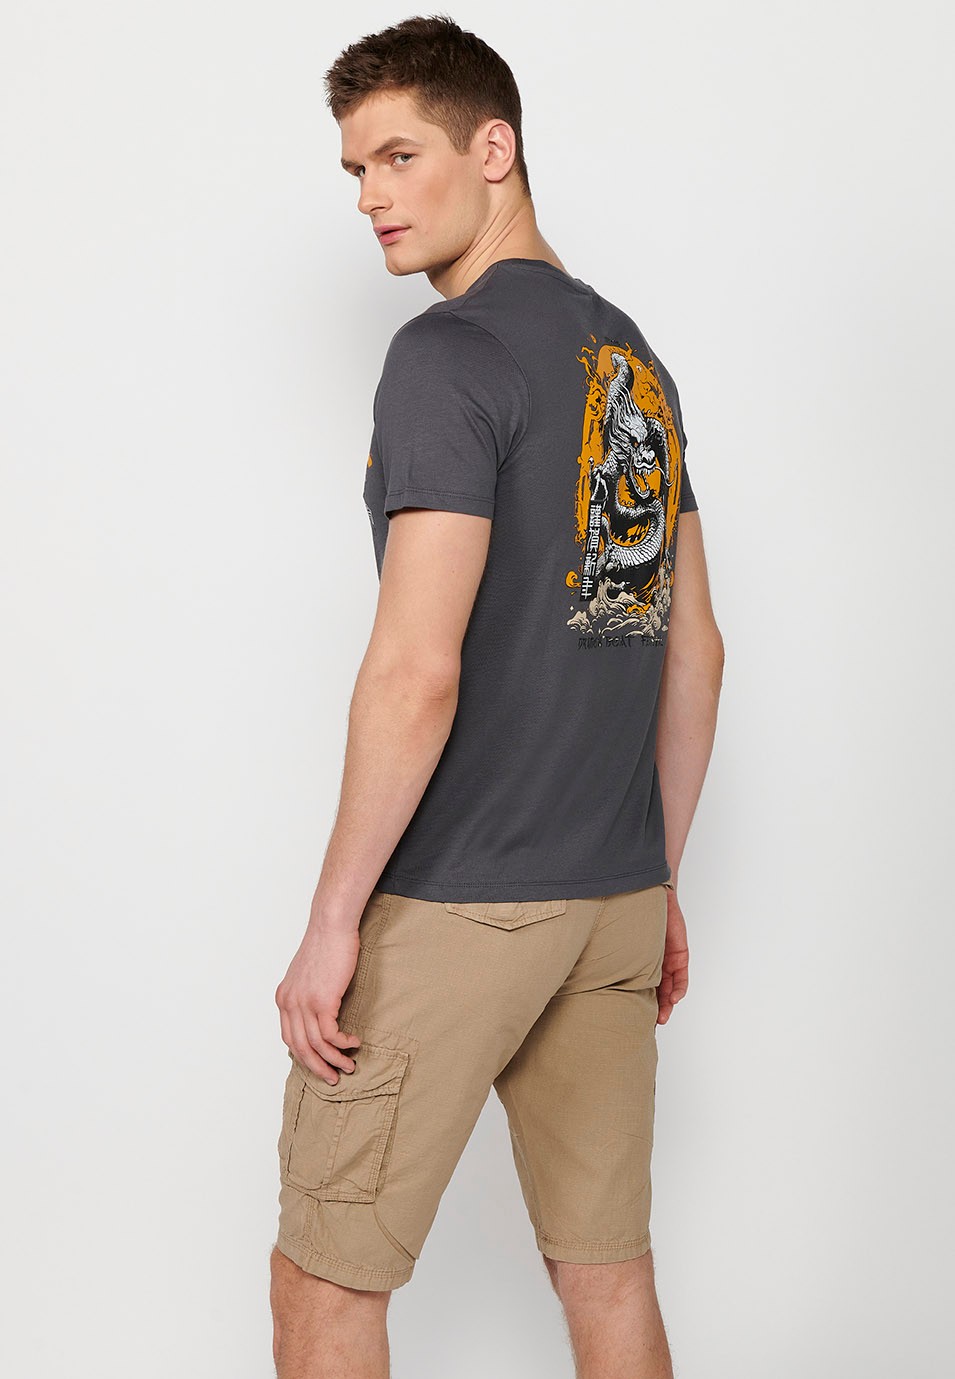 Camiseta de manga corta de algodon, estampada en la espalda, color gris para hombre